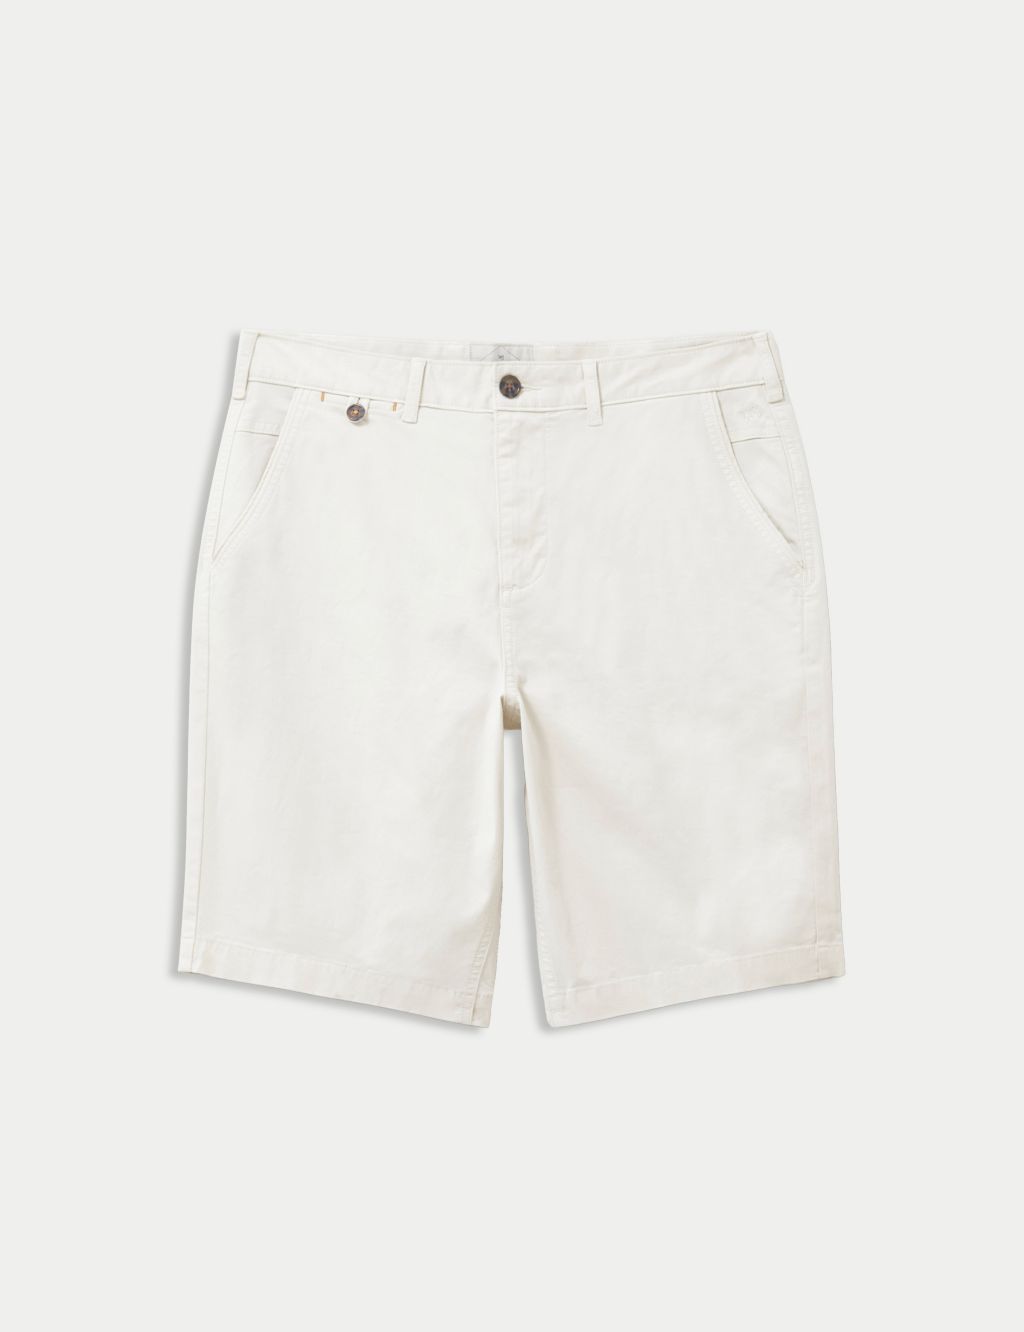 Men’s White Shorts | M&S